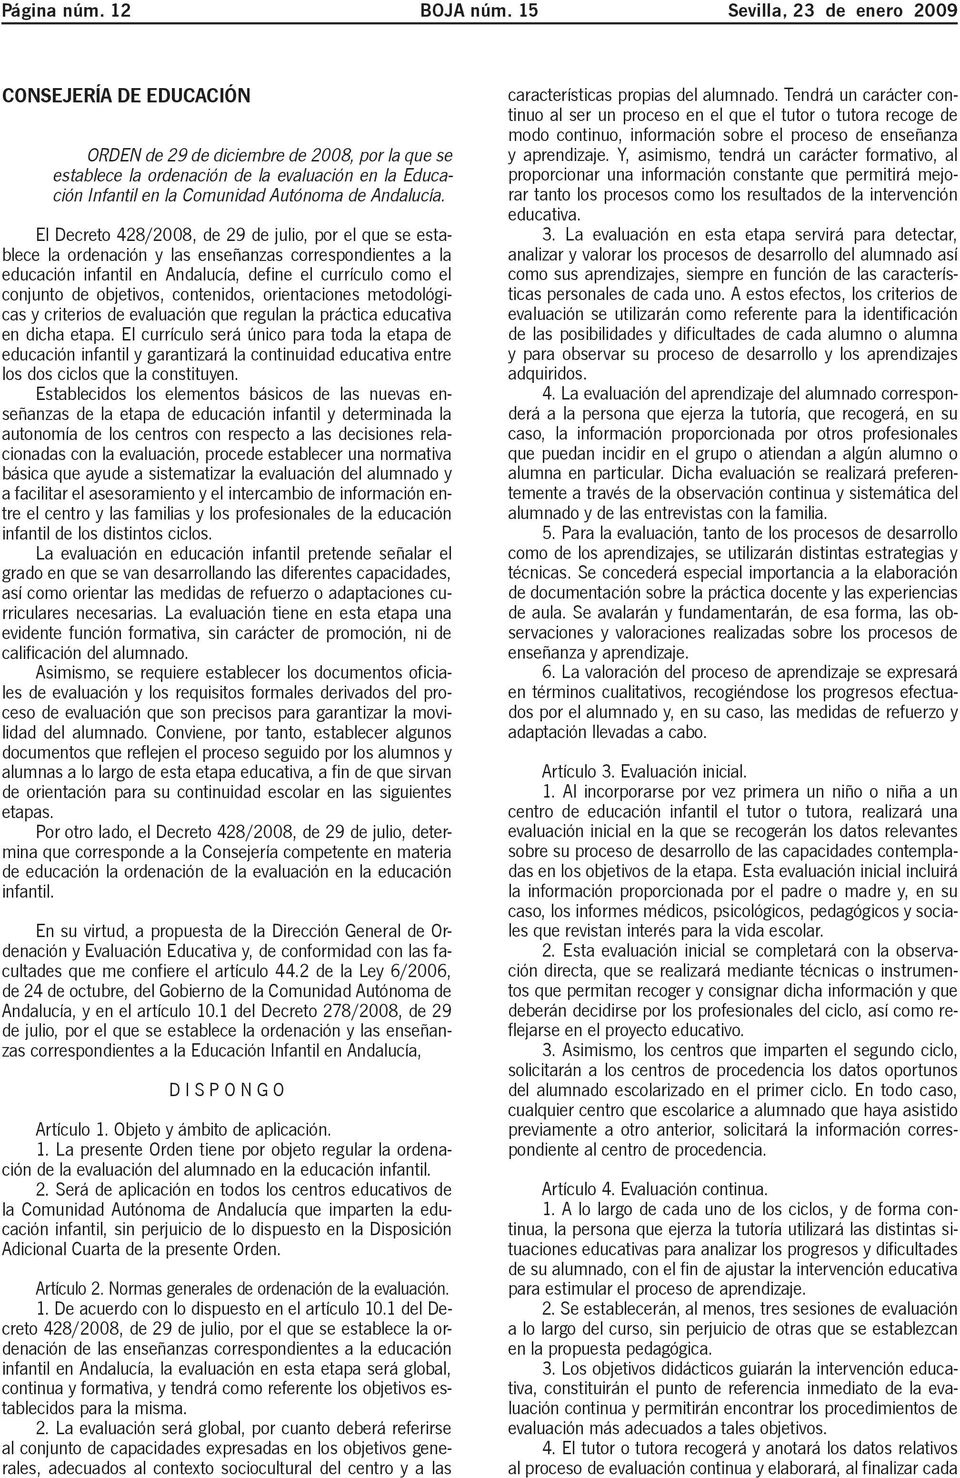 El Decreto 428/2008, de 29 de julio, por el que se establece la ordenación y las enseñanzas correspondientes a la educación infantil en Andalucía, define el currículo como el conjunto de objetivos,